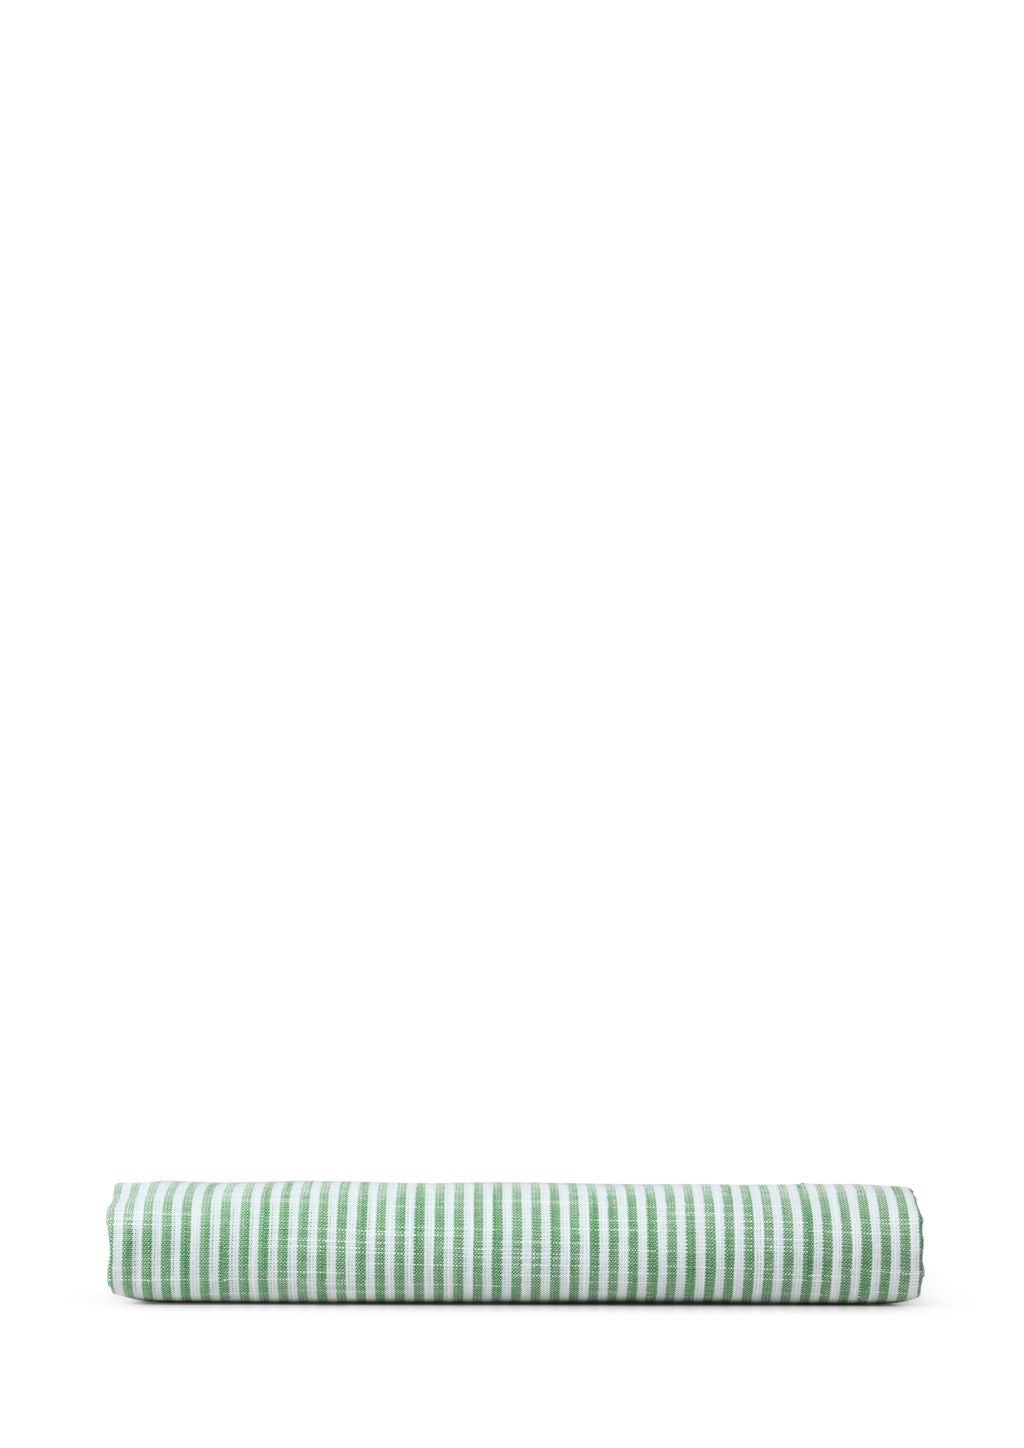 Juna Monochrome Lignes Coussin de coussin 63 x60 cm, vert / blanc